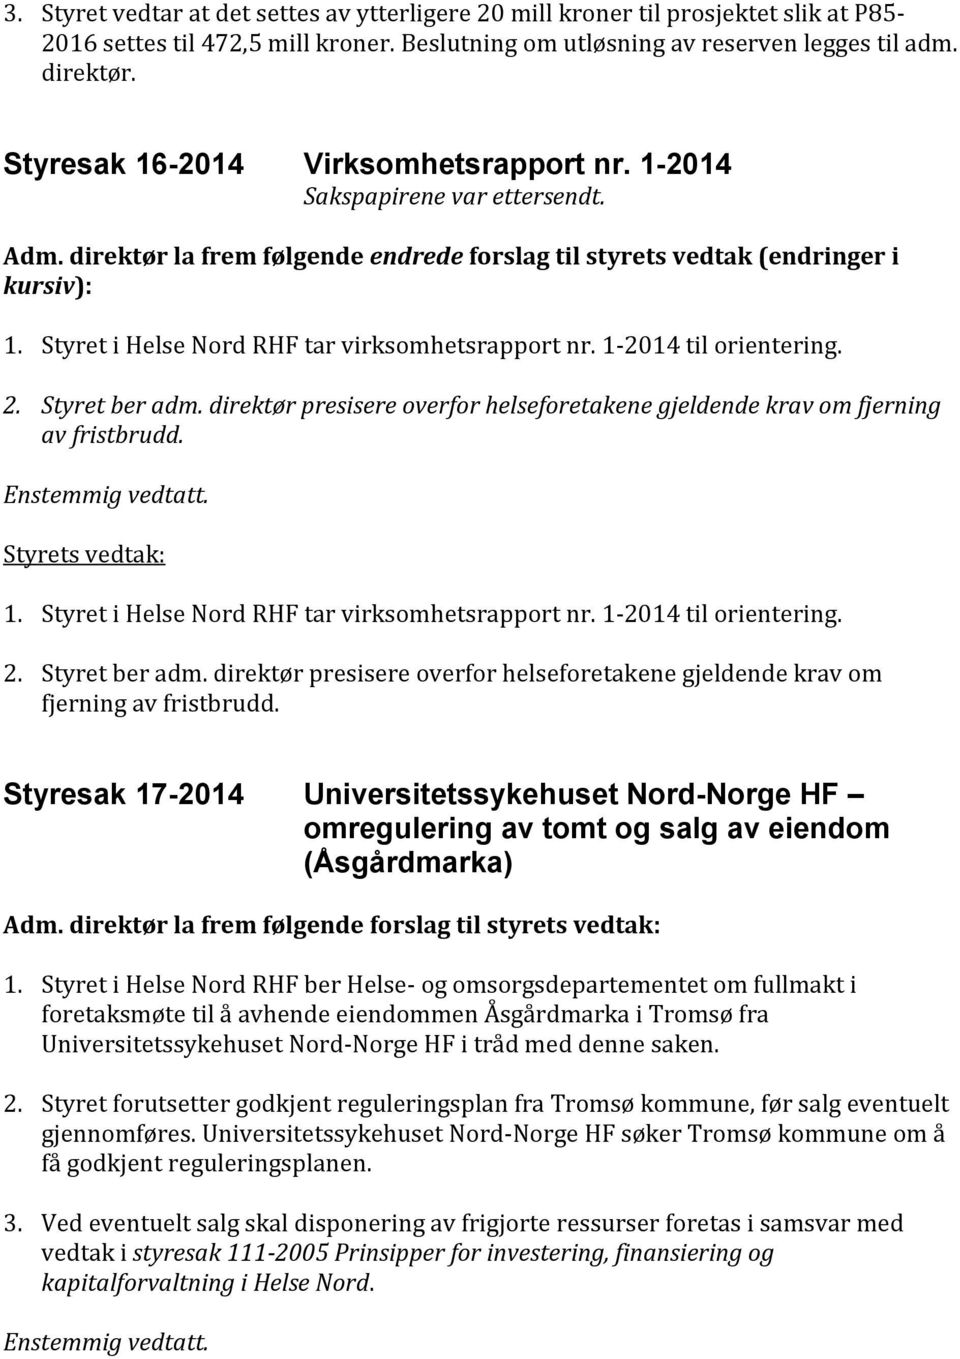 Styret i Helse Nord RHF tar virksomhetsrapport nr. 1-2014 til orientering. 2. Styret ber adm. direktør presisere overfor helseforetakene gjeldende krav om fjerning av fristbrudd. 1. Styret i Helse Nord RHF tar virksomhetsrapport nr.